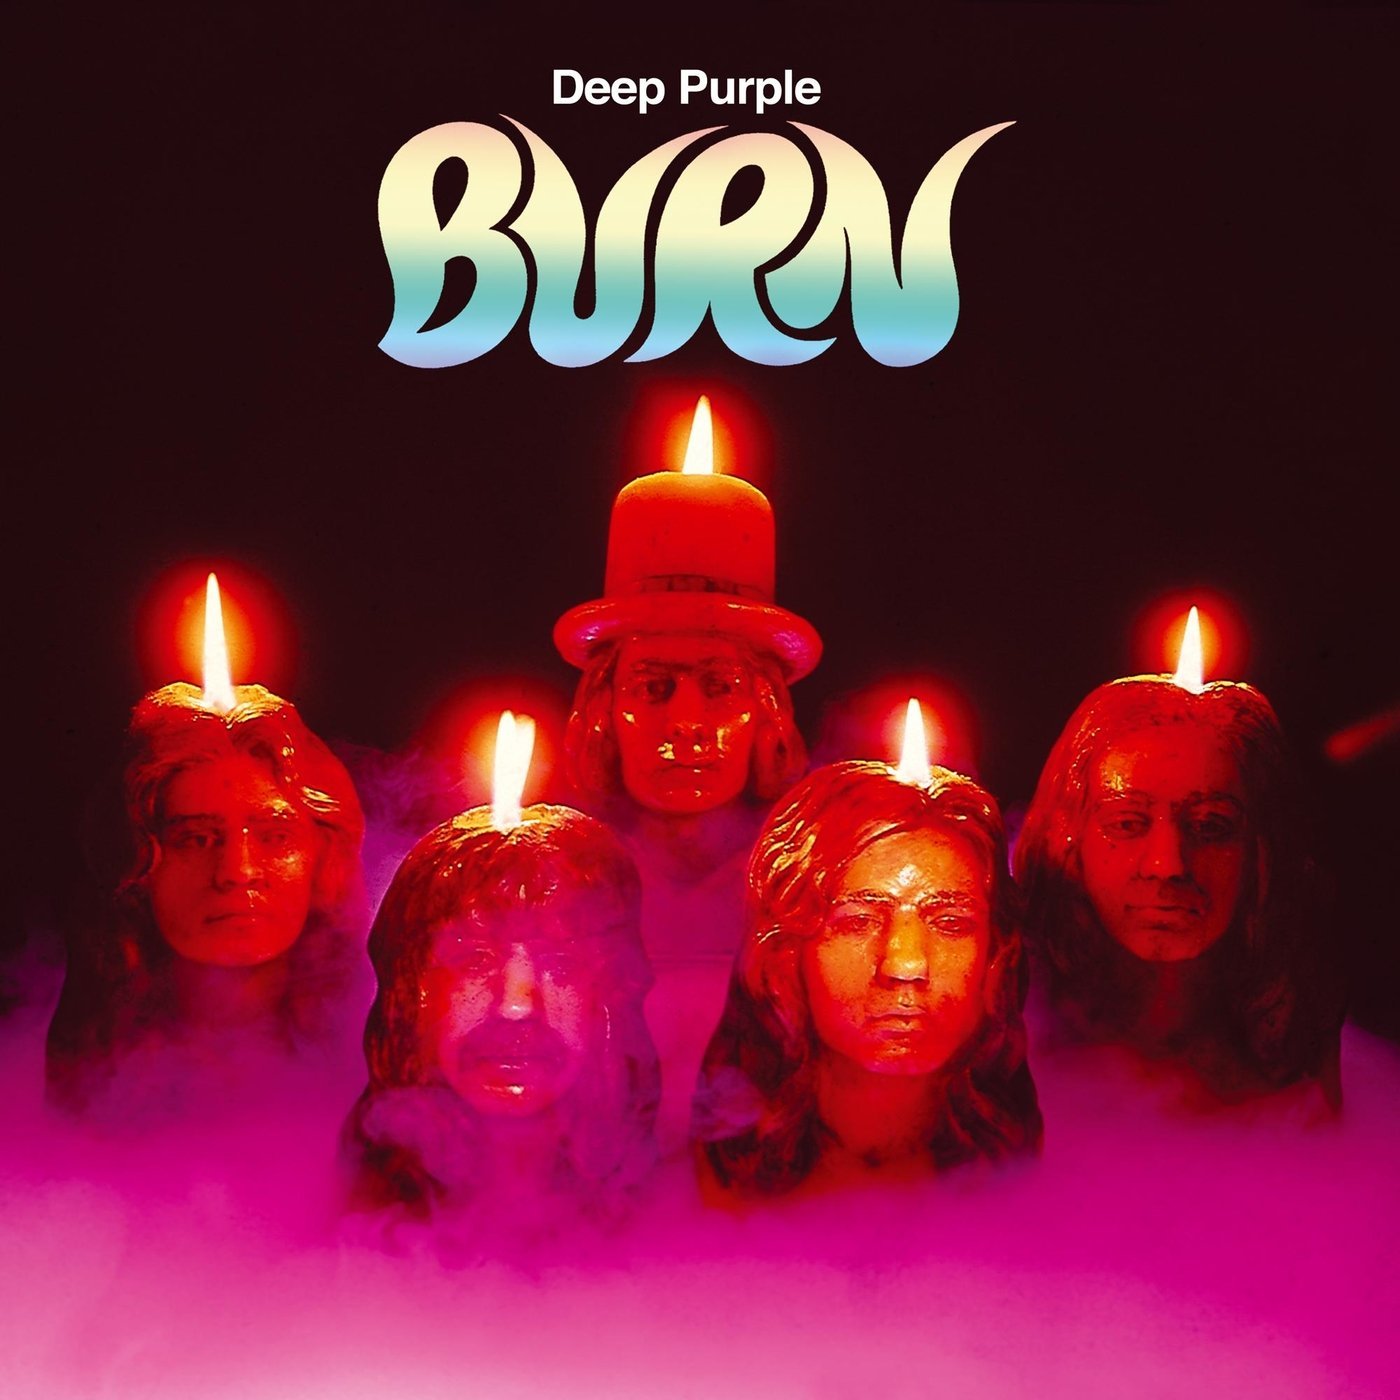 Vinile Deep Purple - Burn NUOVO SIGILLATO, EDIZIONE DEL 29/01/2016 SUBITO DISPONIBILE